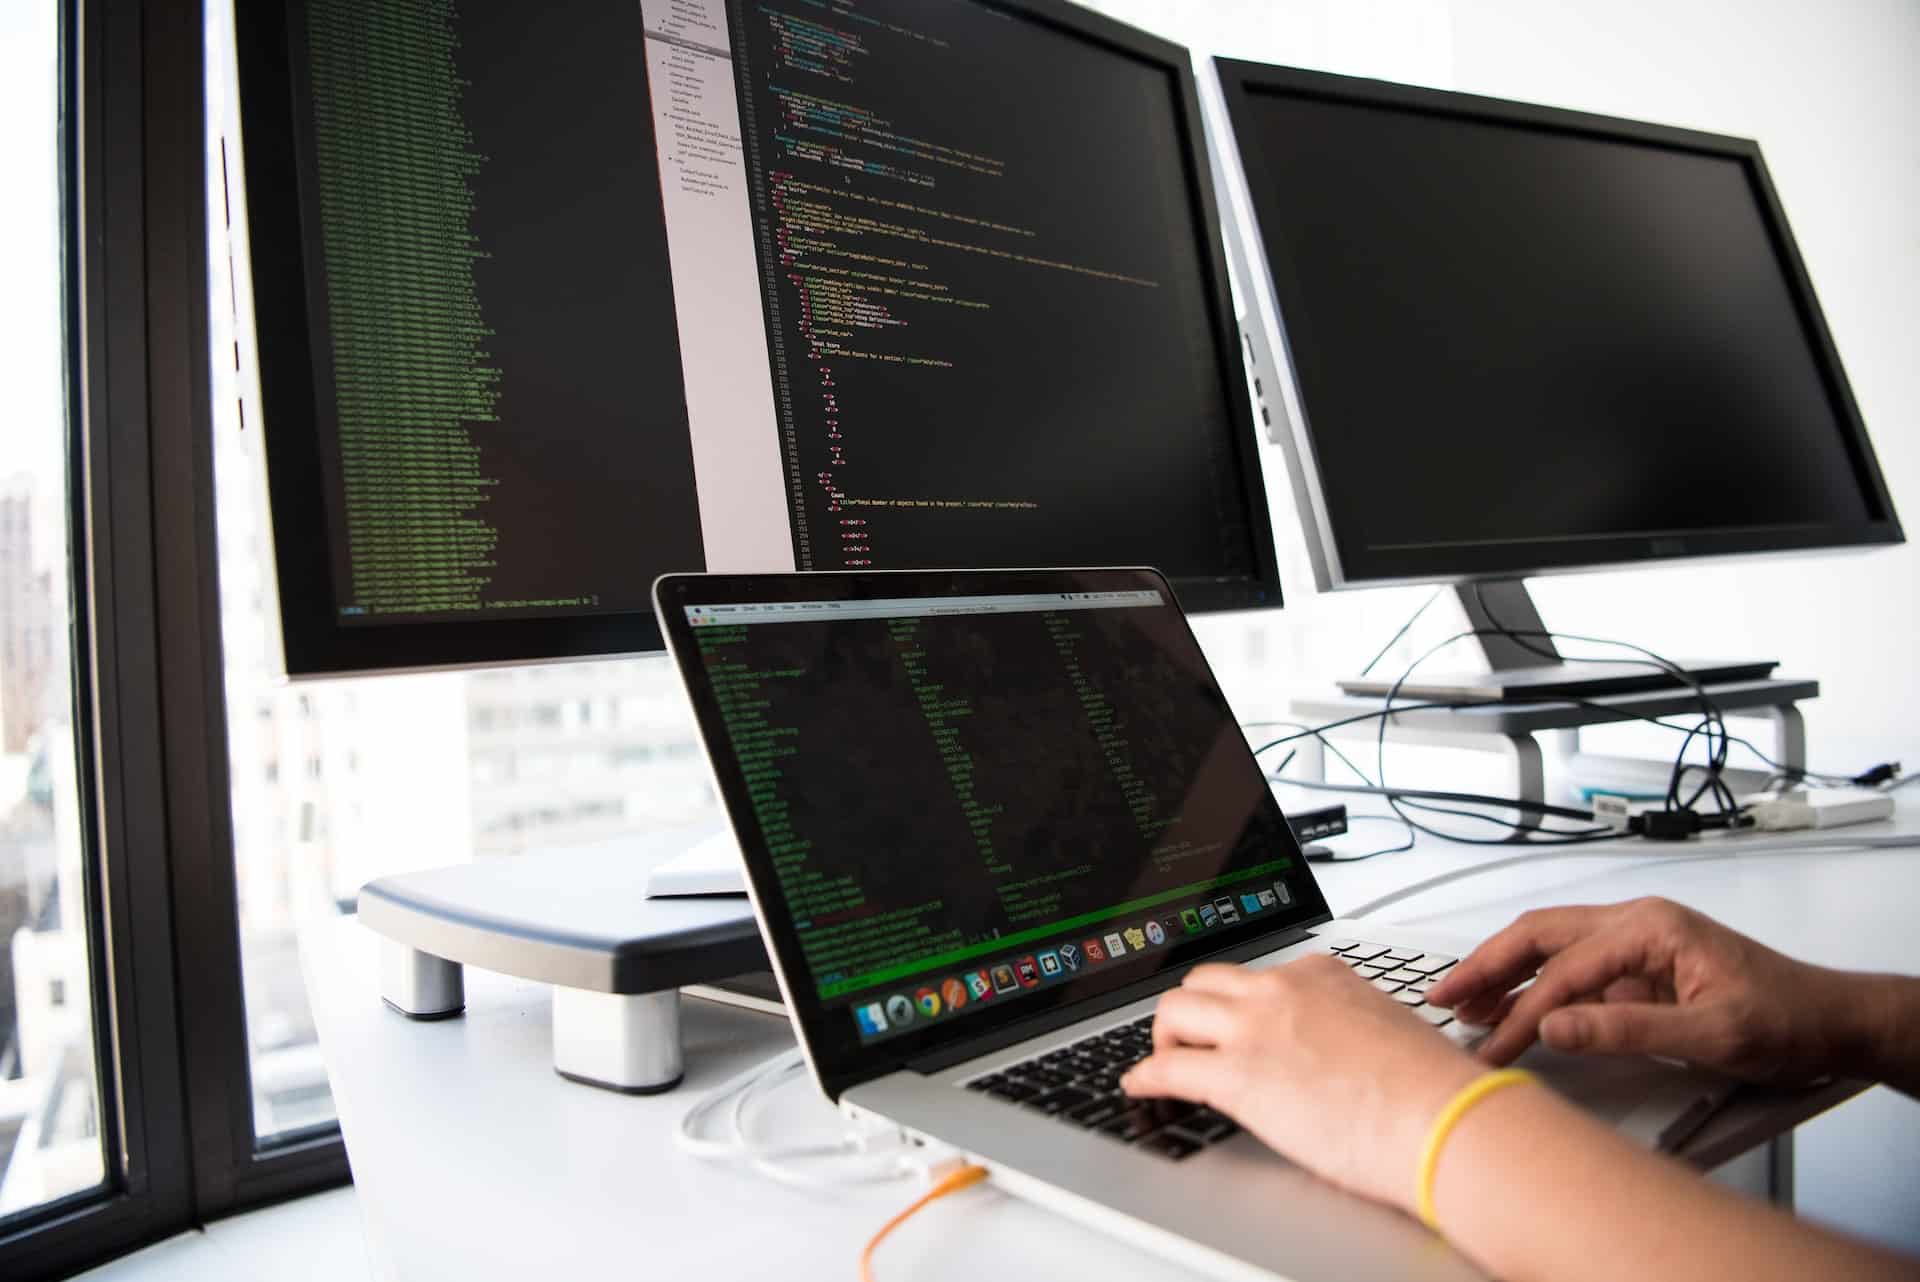 A imagem, utilizada para ilustrar como é possível ser um programador melhor, conta com as mãos de uma pessoa desenvolvendo um software em um computador sobre uma mesa com três telas alternativas